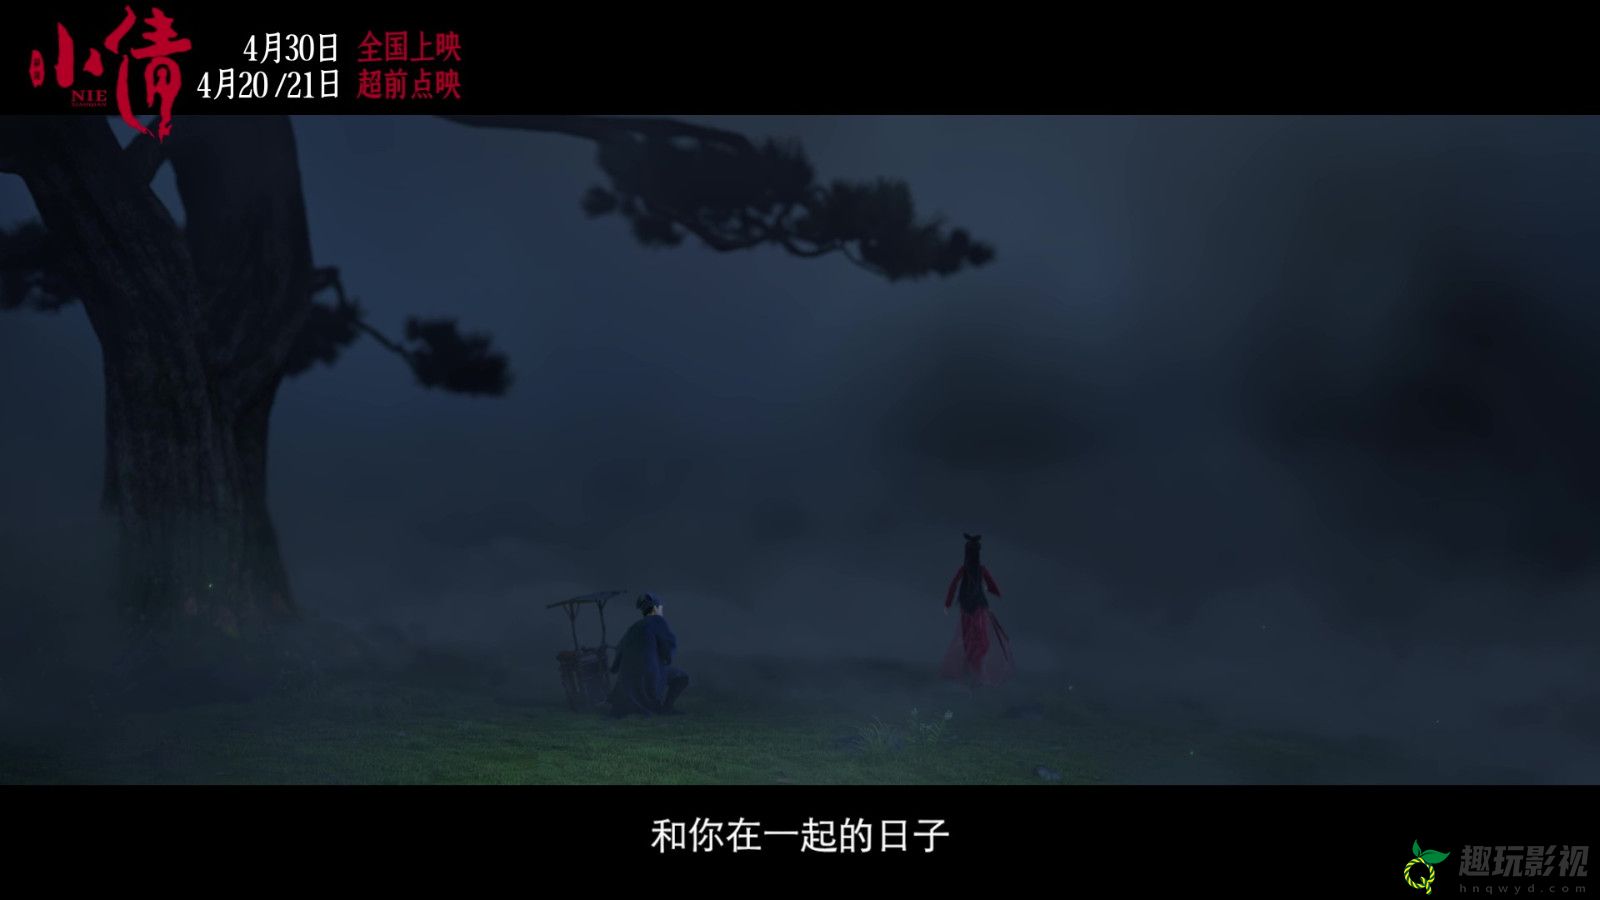 电影《小倩》片尾曲MV “只要今生”双人海报